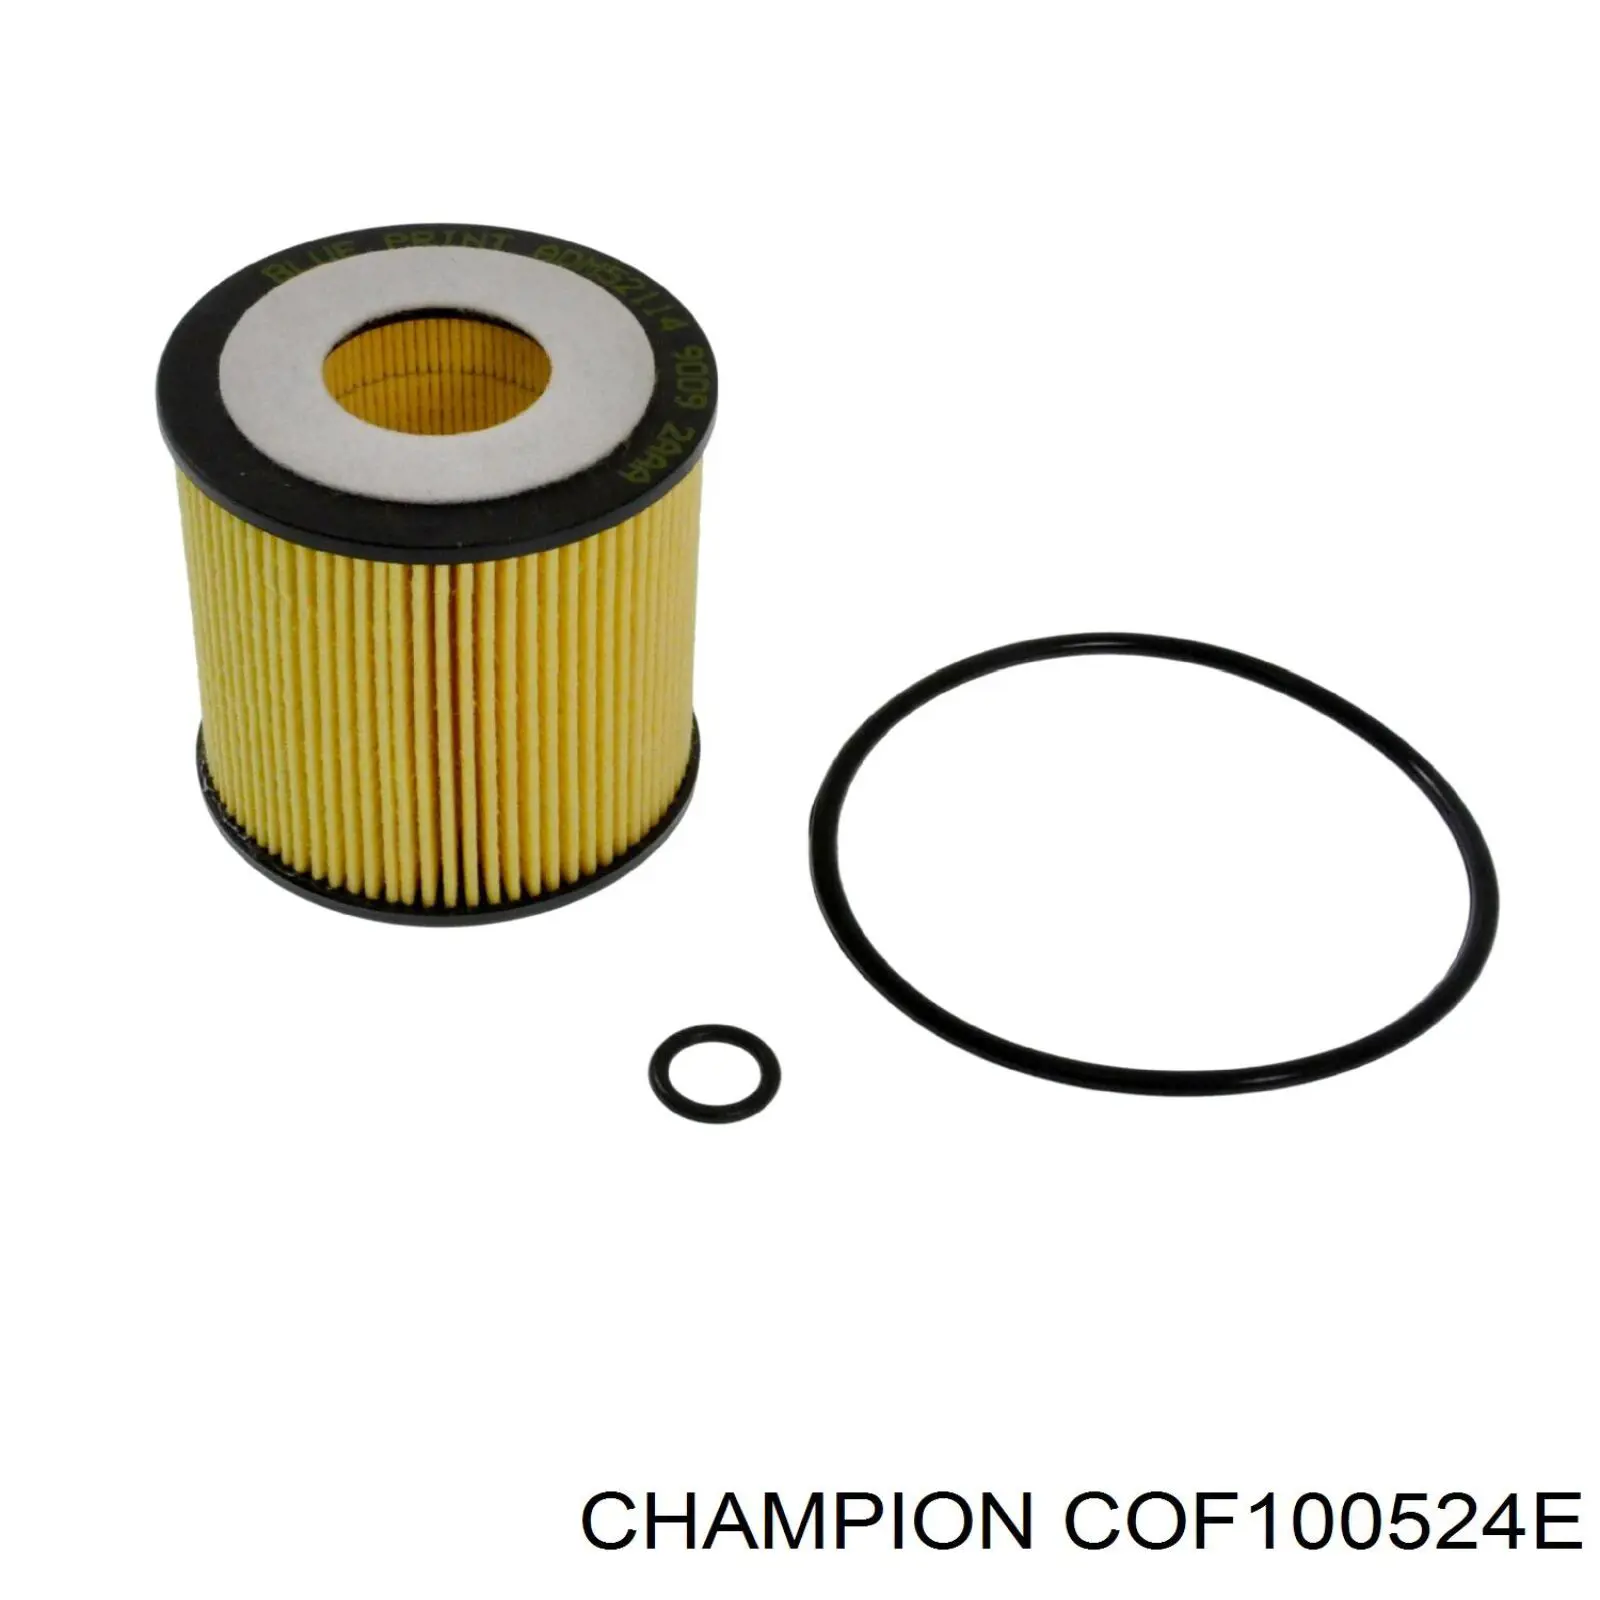 COF100524E Champion filtro de aceite